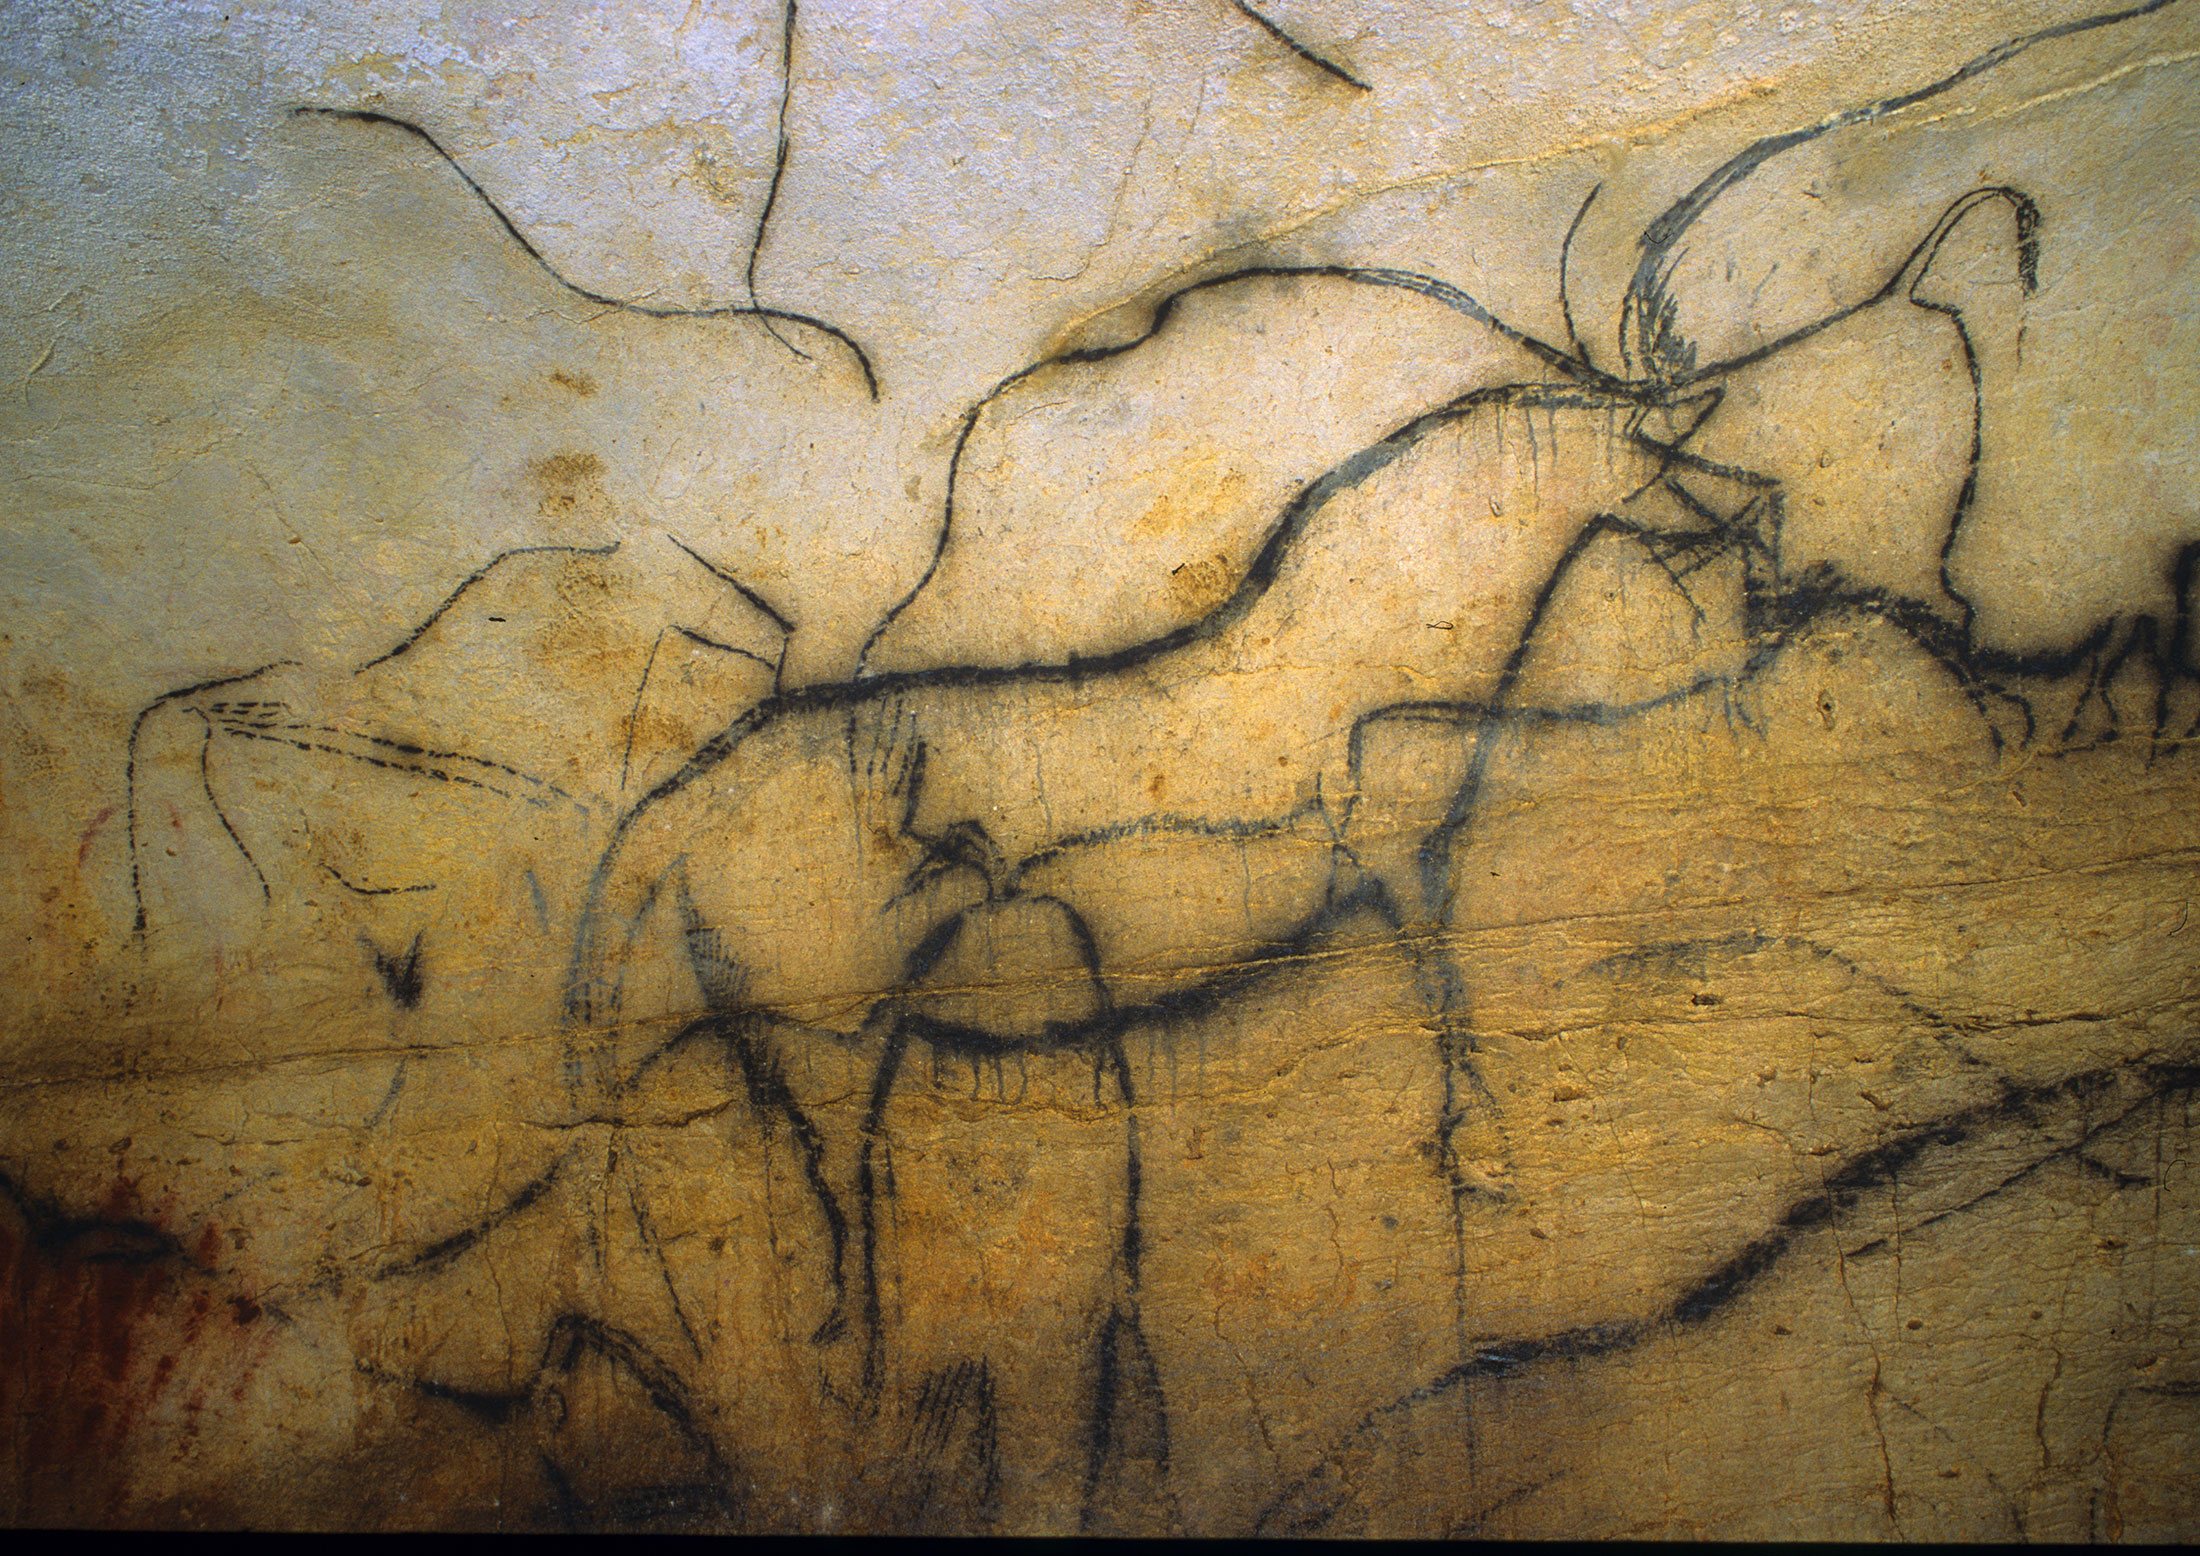 Un bond de 29 000 ans, <br />
aux origines de lart <br />
